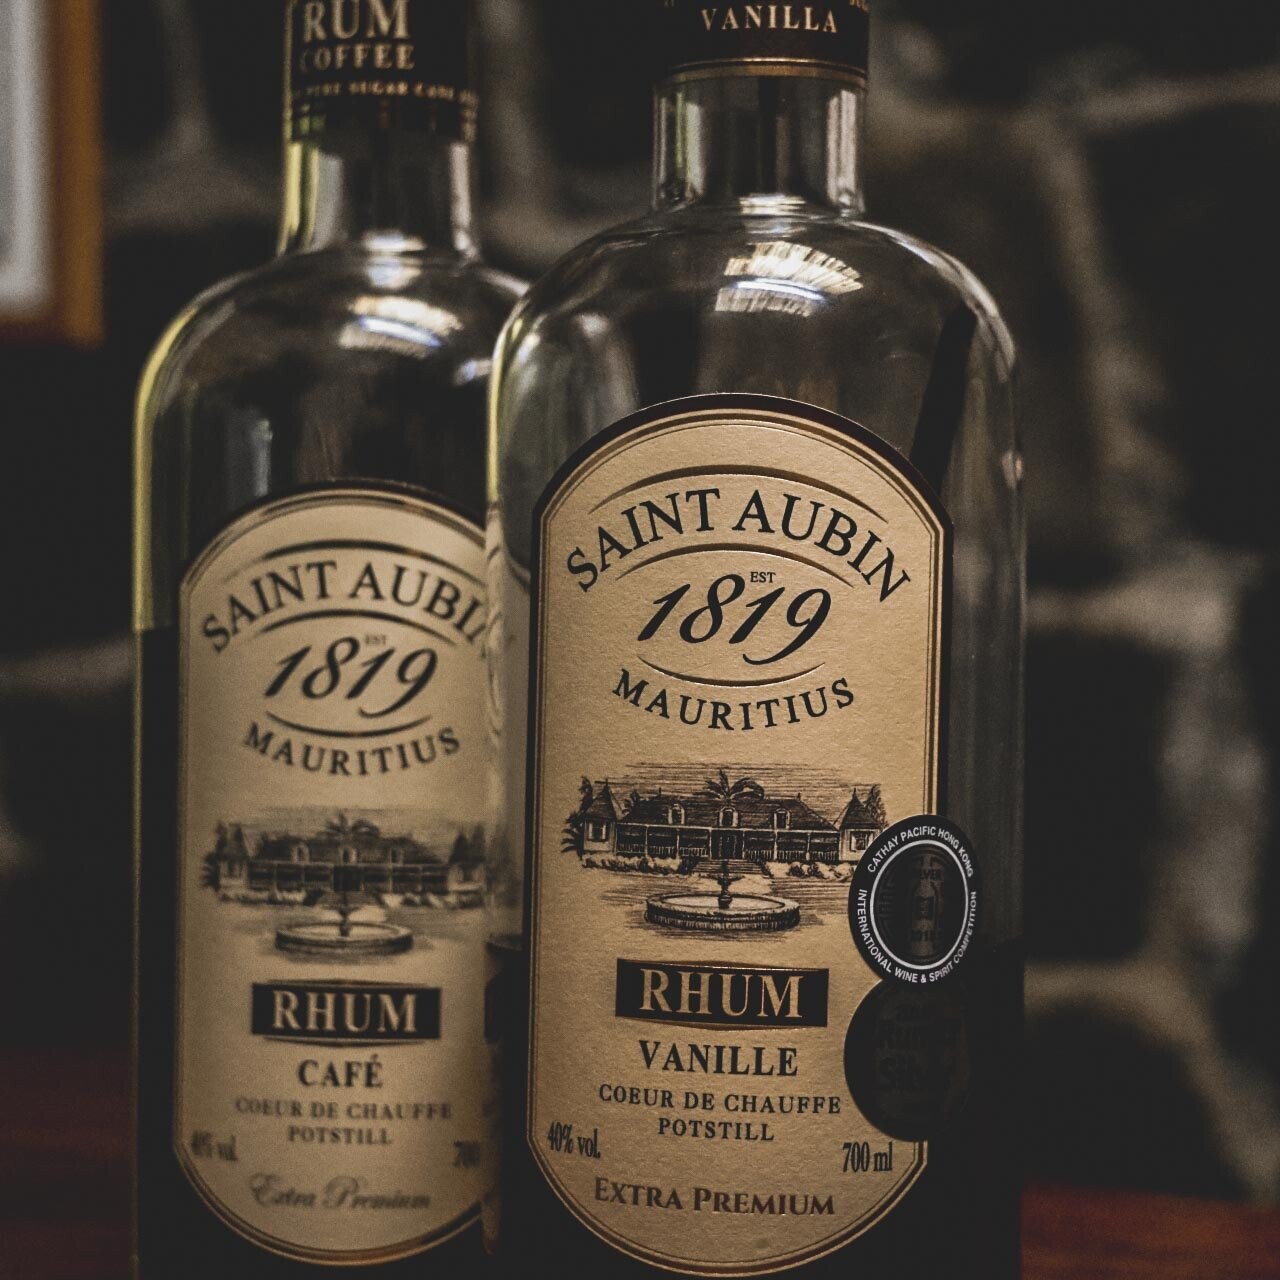 Bottles of Saint Auburn rum in Mauritius